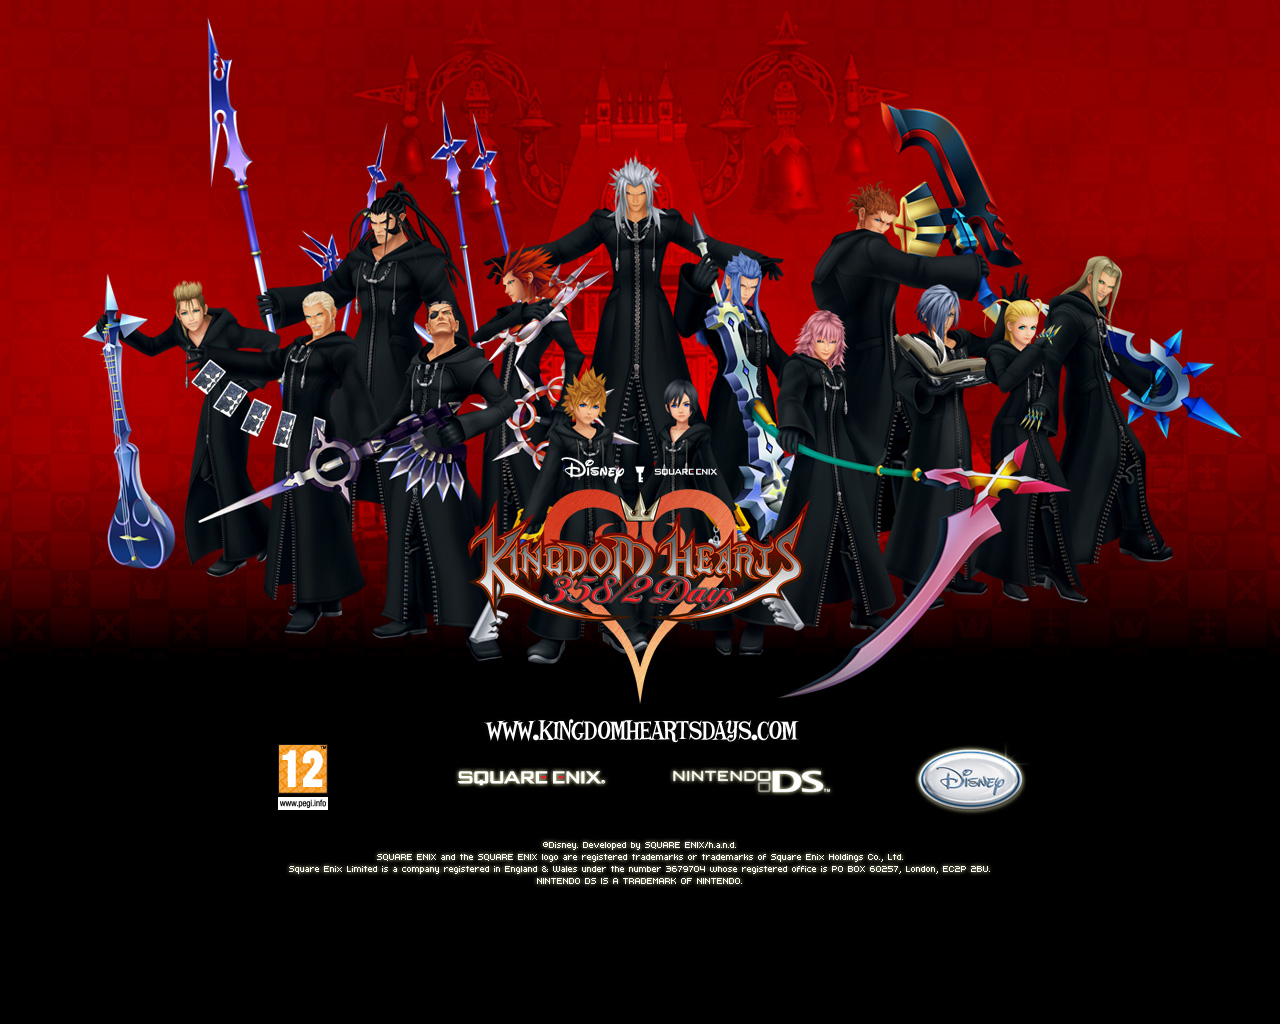 Kingdom Hearts All Organization 13 Members - HD Wallpaper 